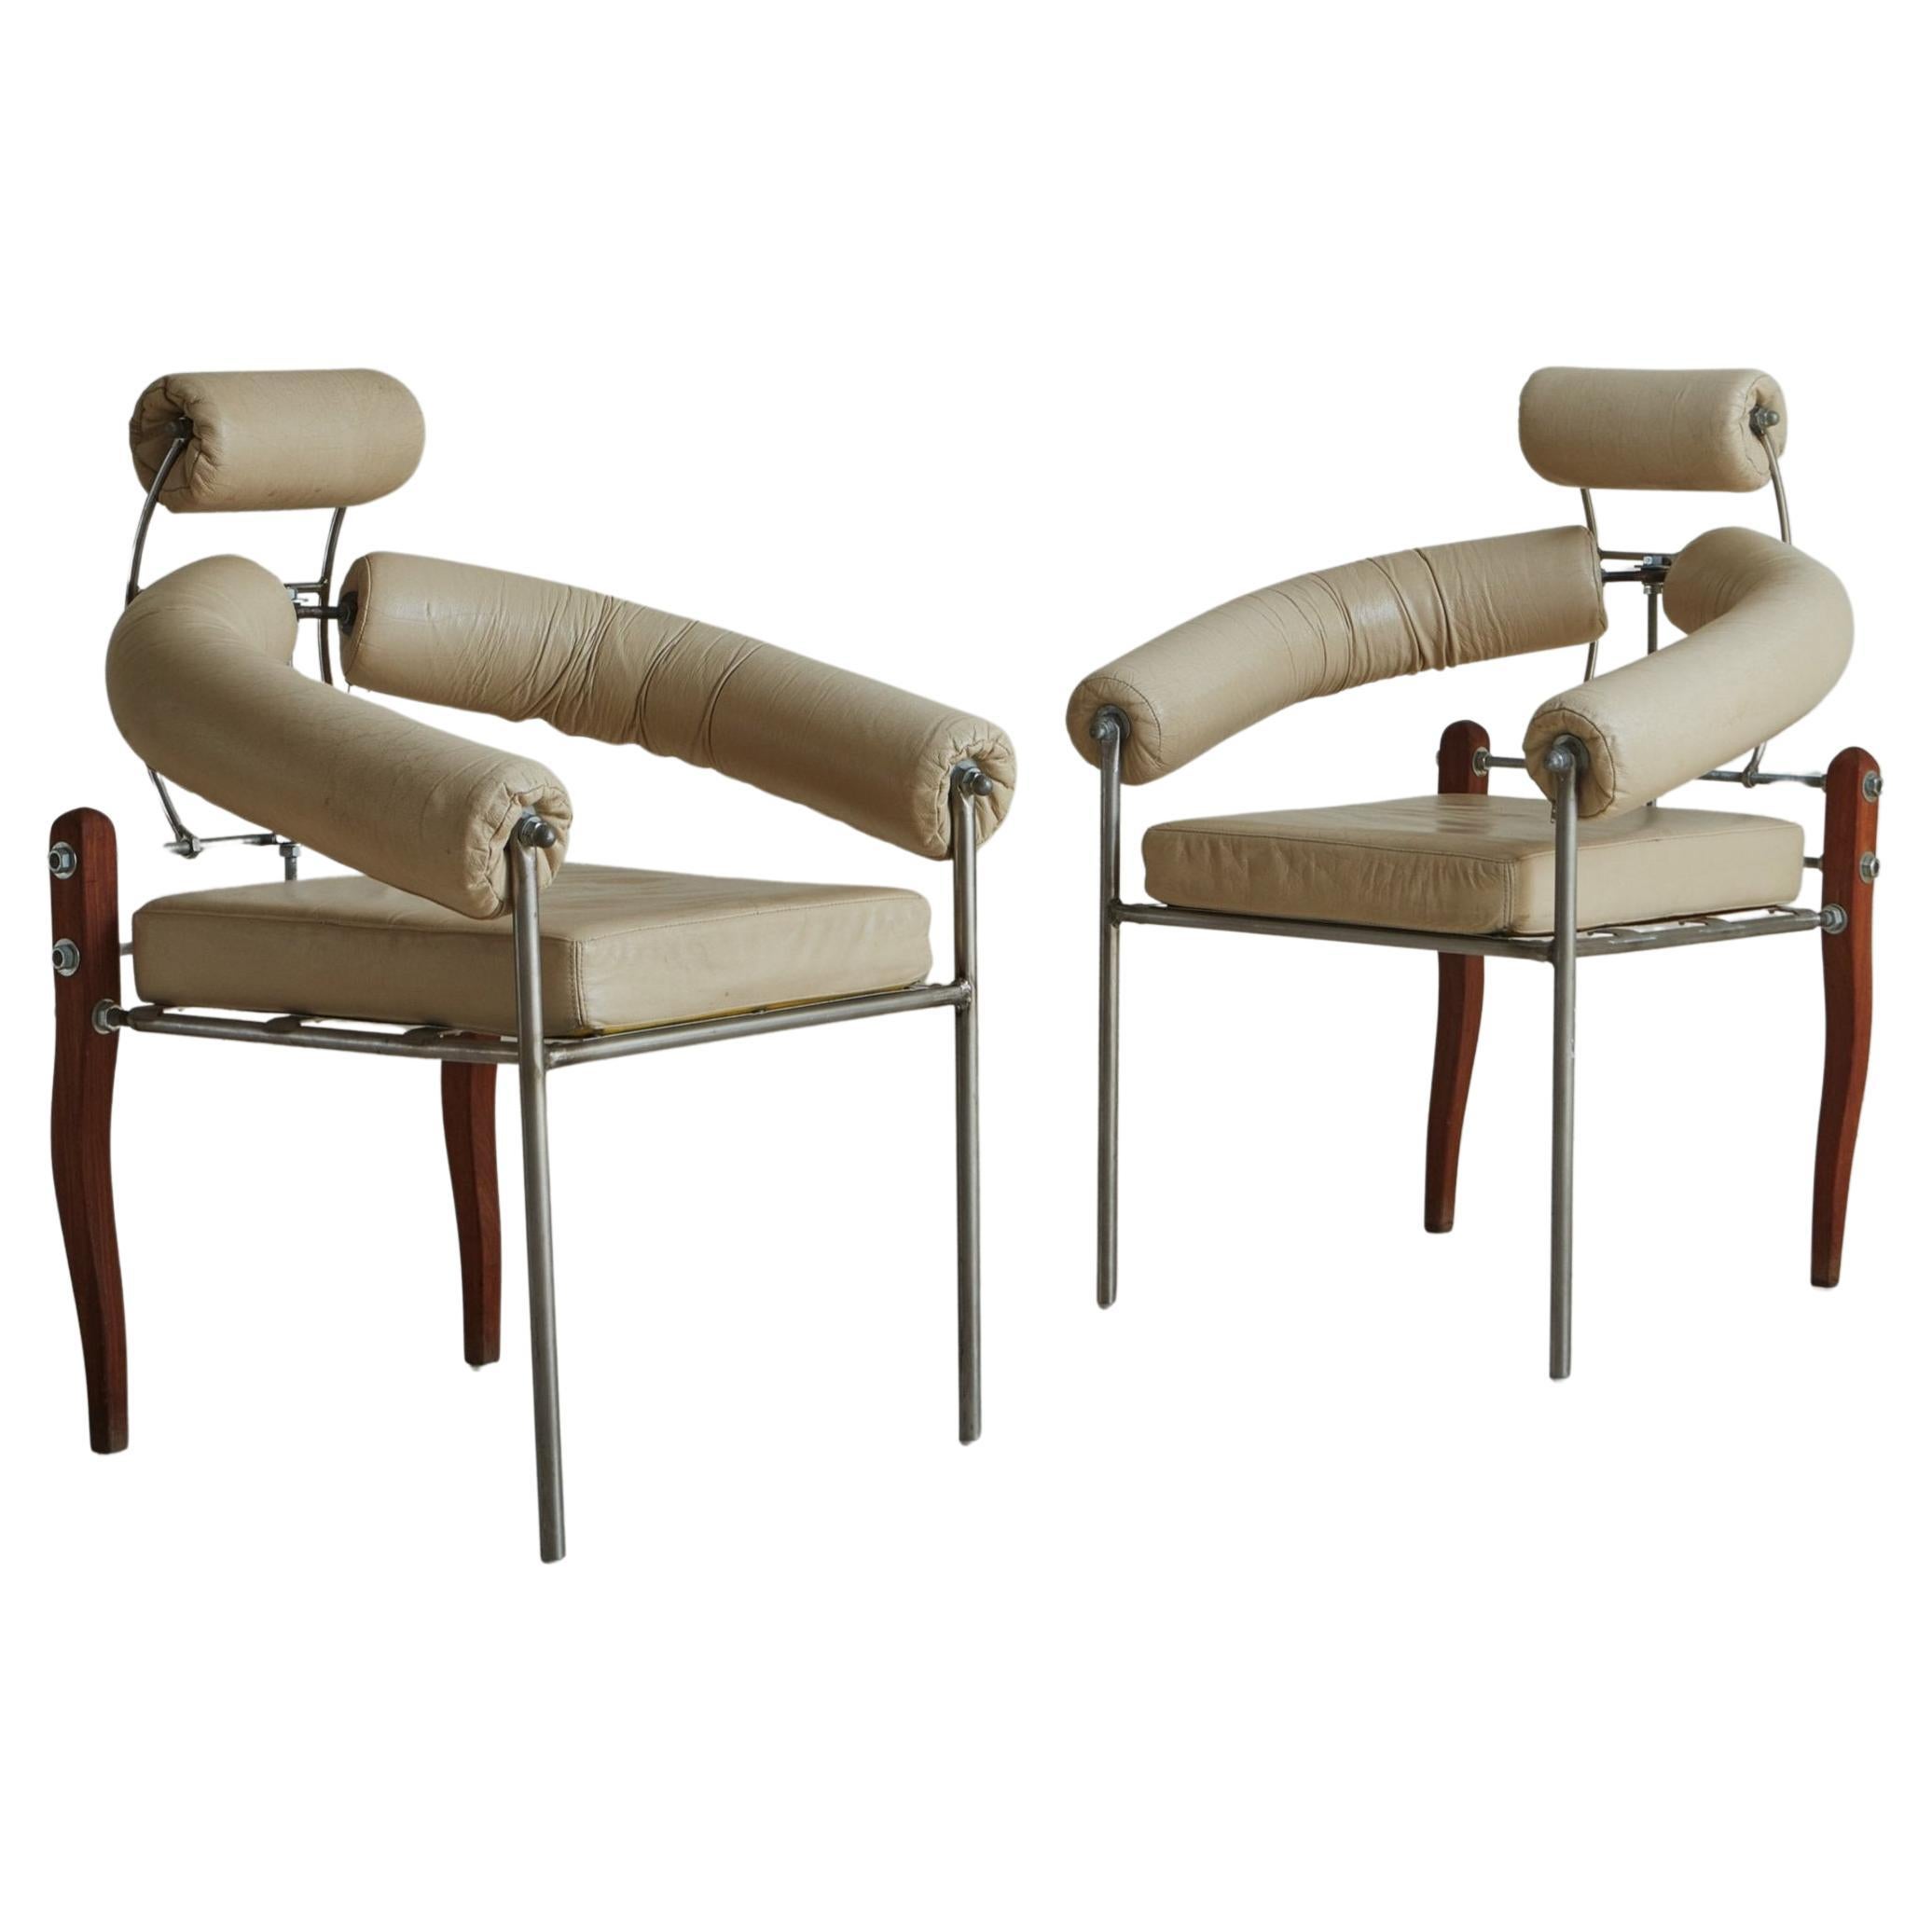 Pair of ‘Pirmin’ Chairs in Cream Leather by Heinz Julen, Switzerland 1990s